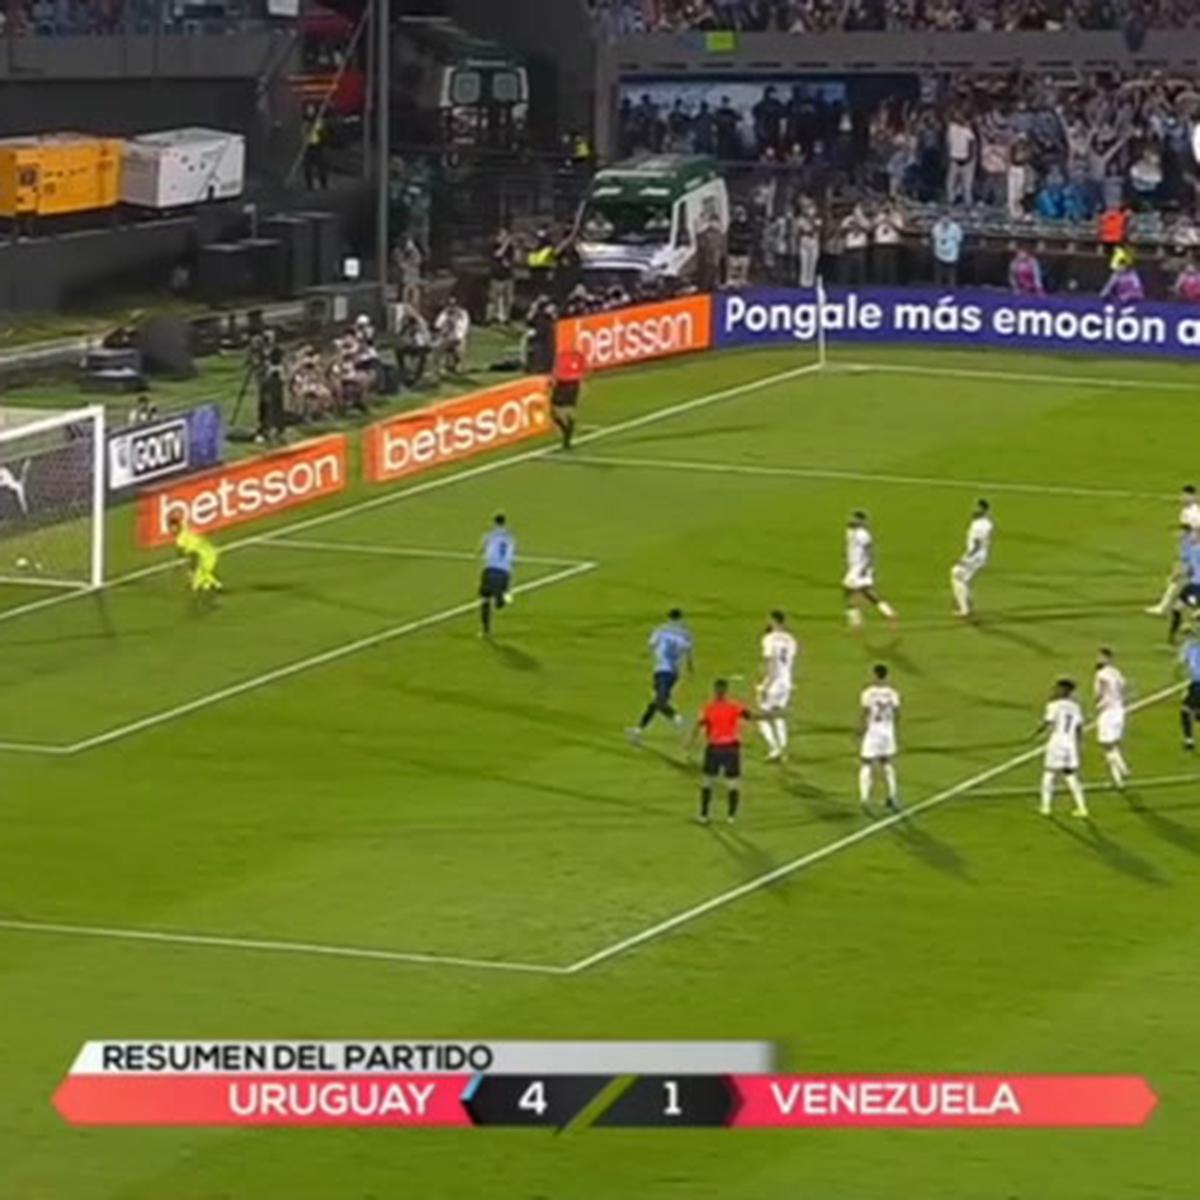 EN VIVO, Uruguay vs. Venezuela (partido terminado)